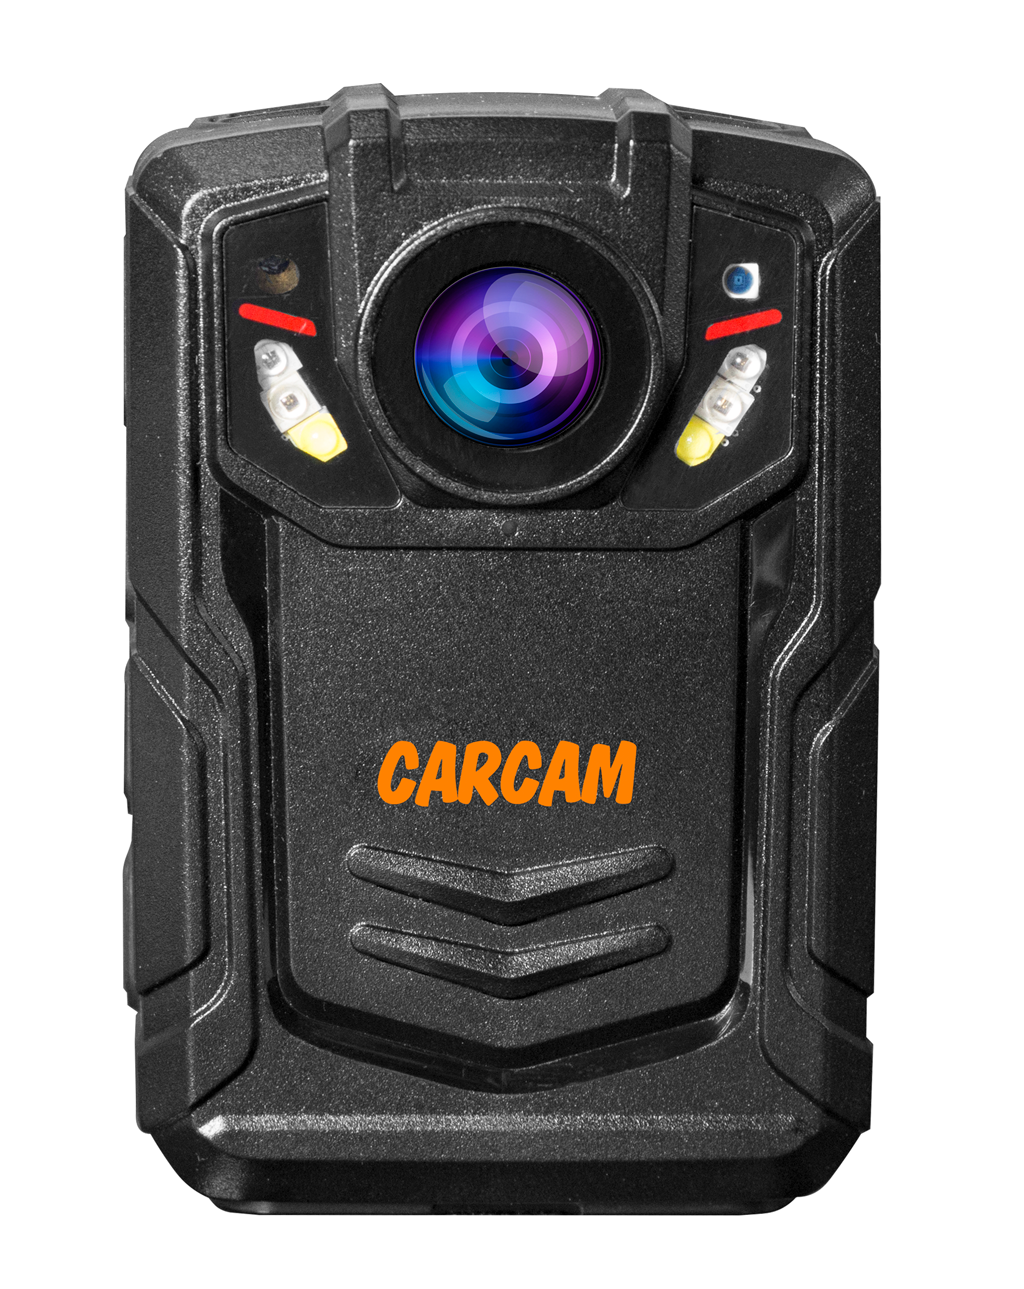 Персональный видеорегистратор CARCAM COMBAT 2S PRO 128GB персональный quad hd видеорегистратор для работников технических объектов carcam combat 2s prof 64gb